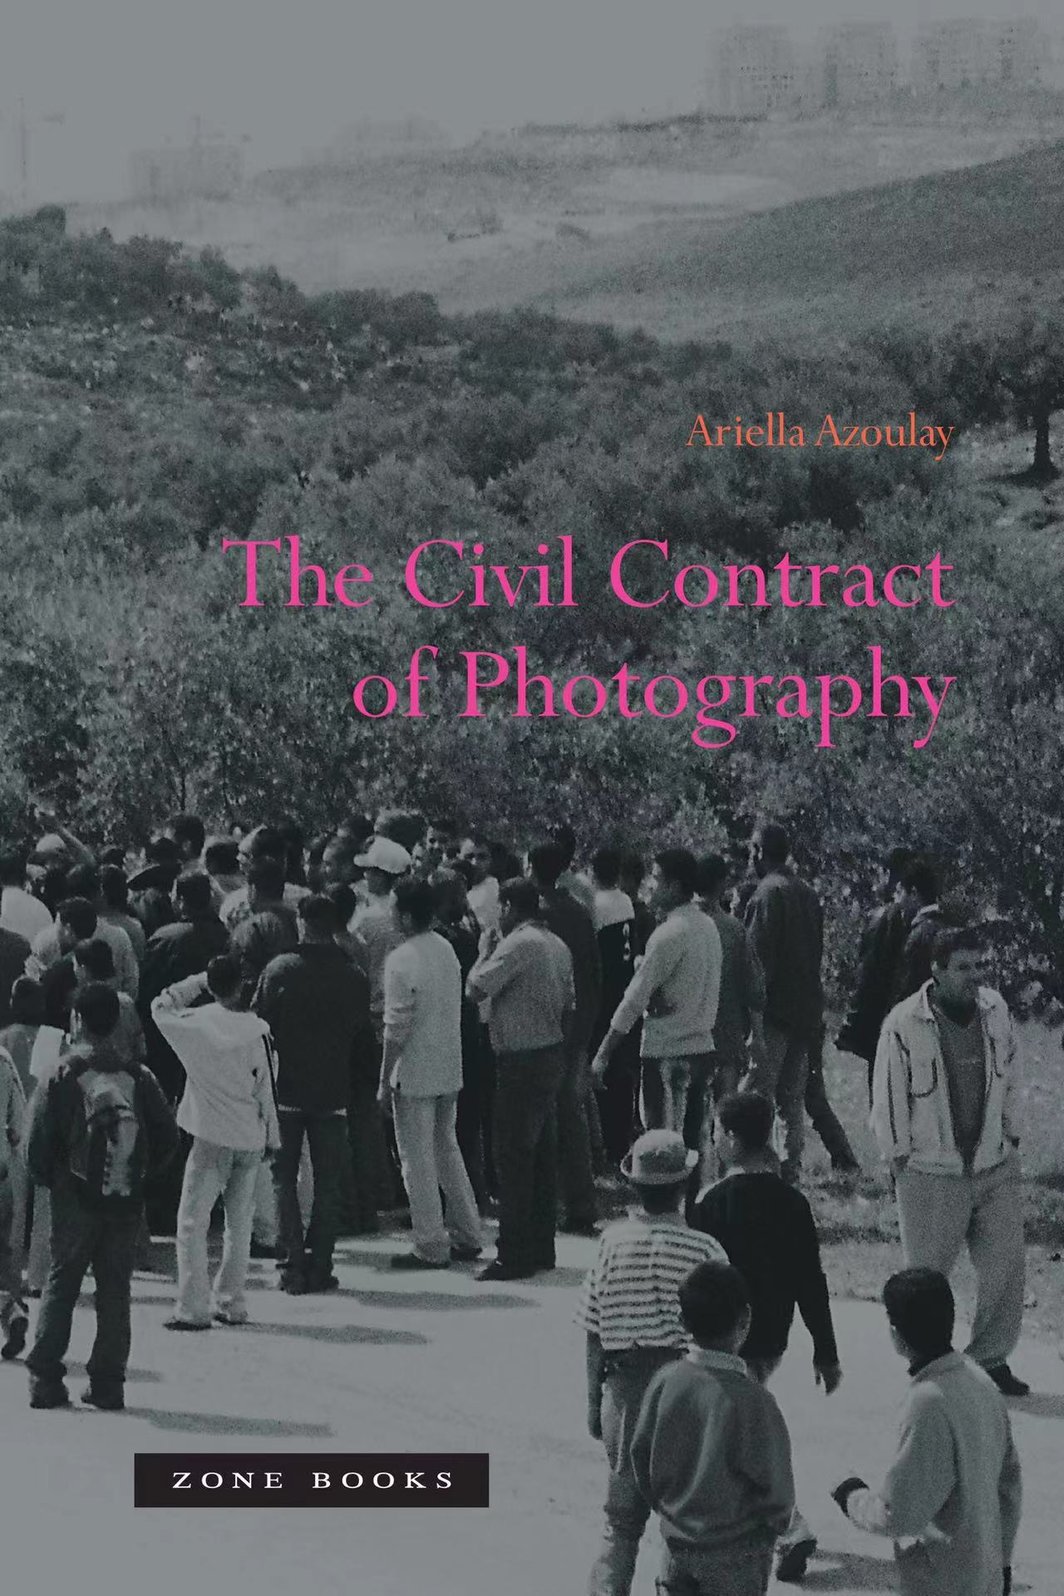 阿里艾拉·阿祖莱，《摄影的公民契约》，2008，Zone Books出版.